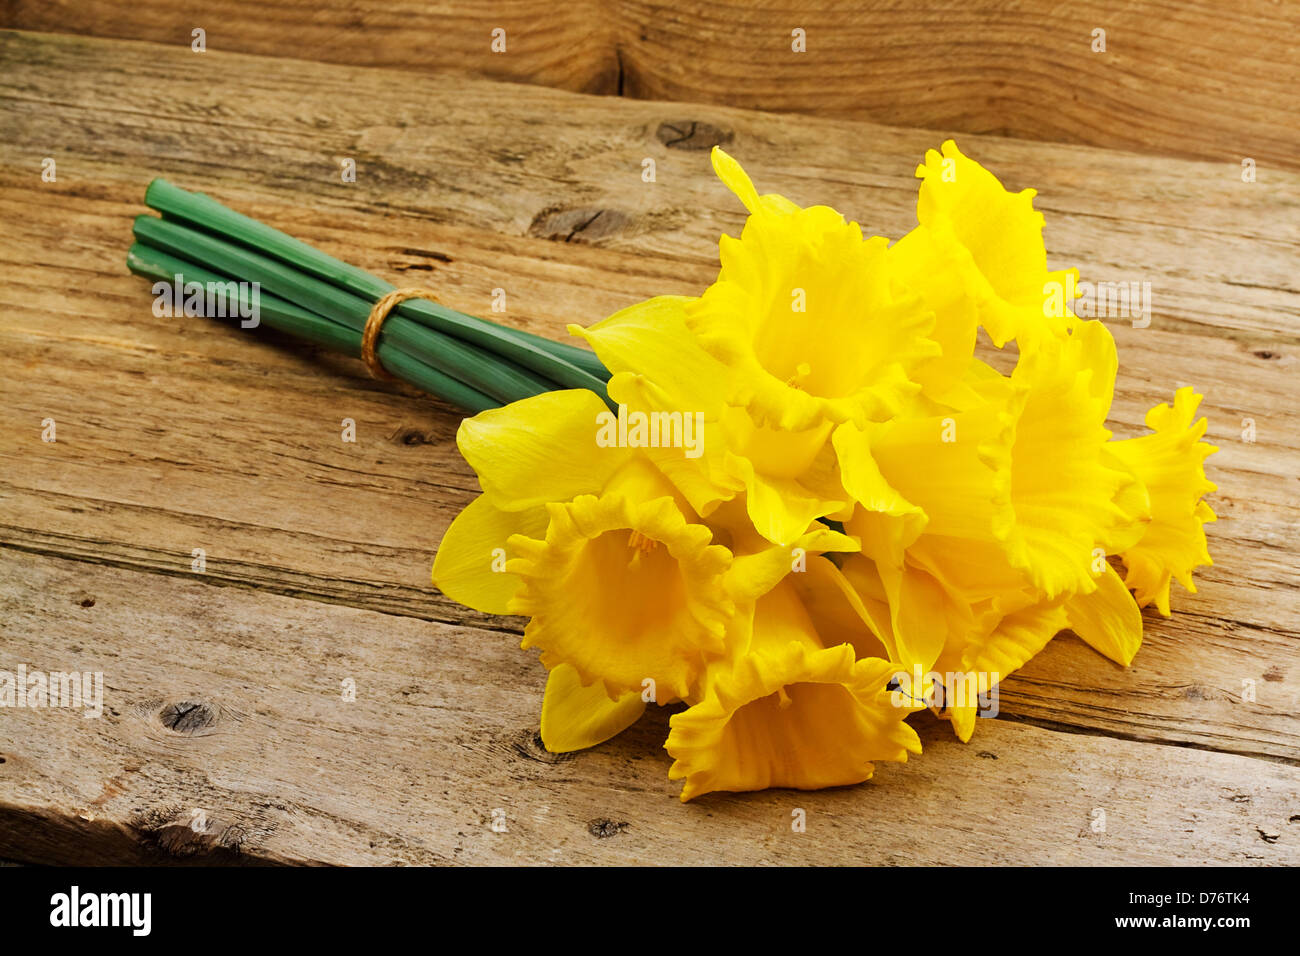 Un montón de narcisos un conocido símbolo de la temporada de primavera, cuyas flores florecen durante la primavera Foto de stock